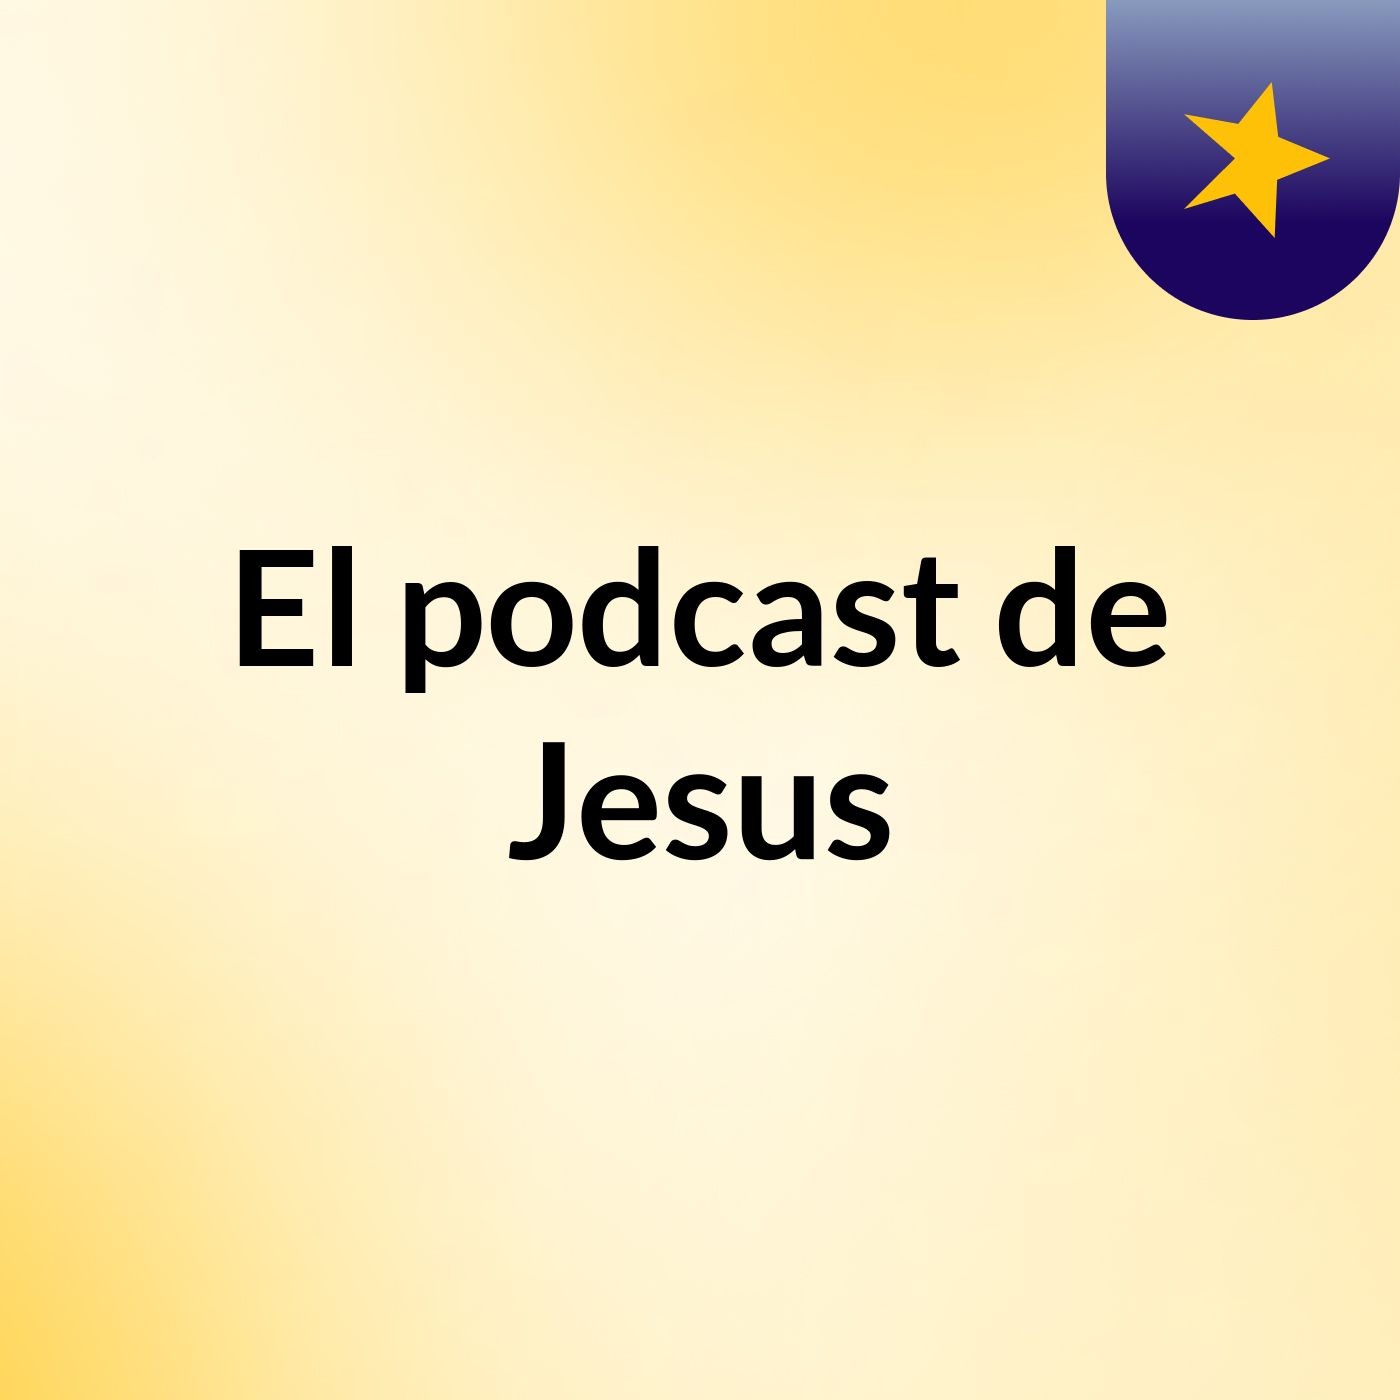 El podcast de Jesus